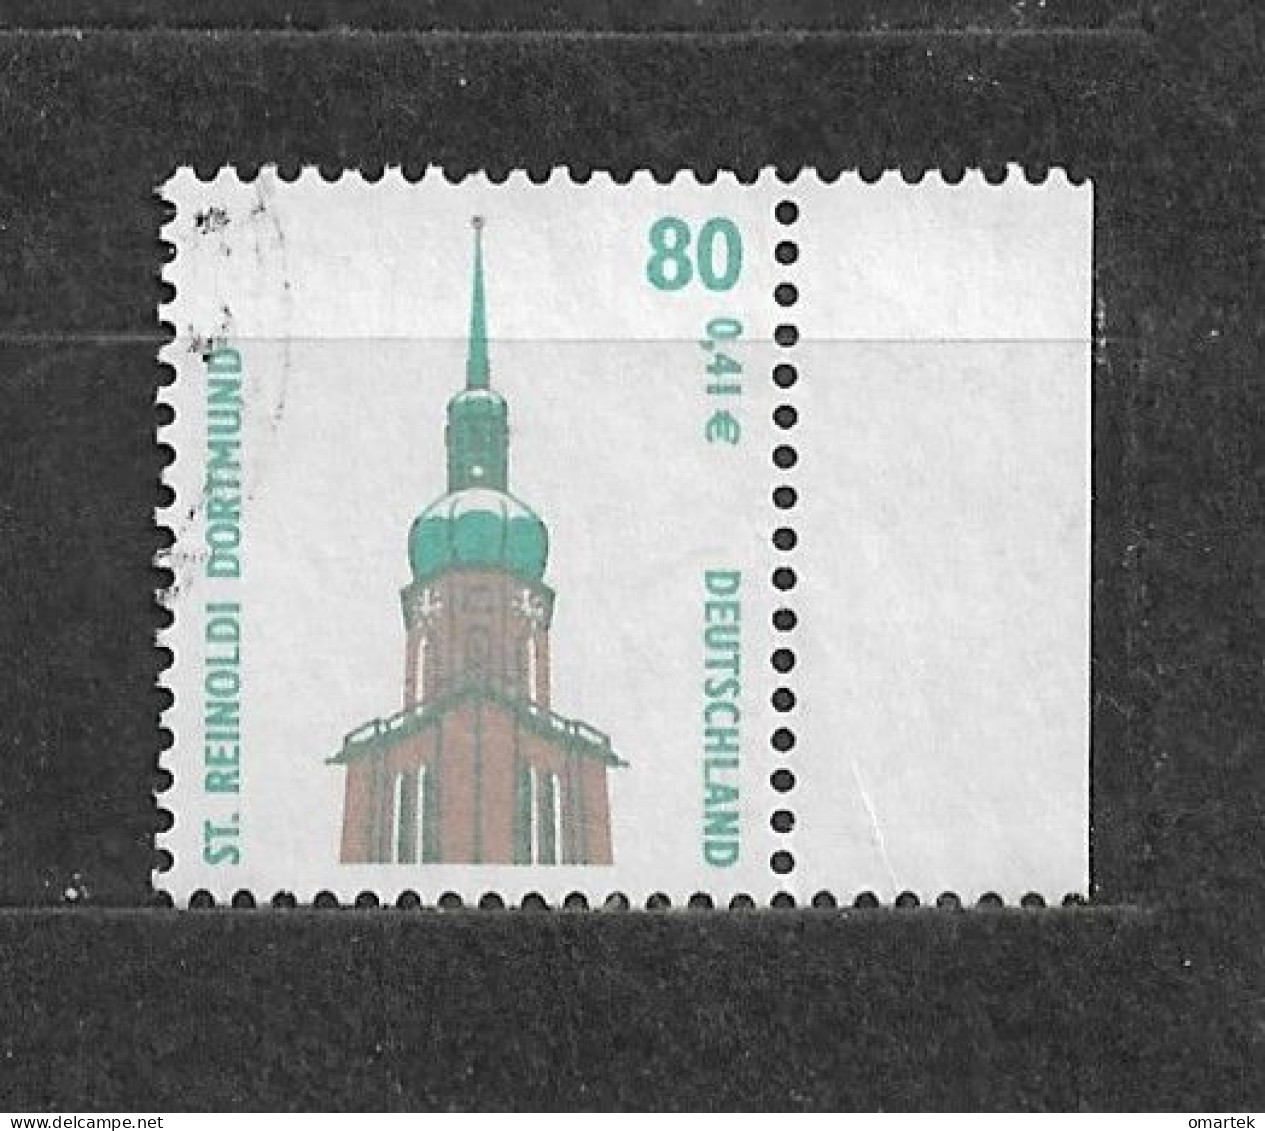 Deutschland Germany BRD 2001 ⊙ Mi 2177 St. Reinoldi, Dortmund. - Used Stamps